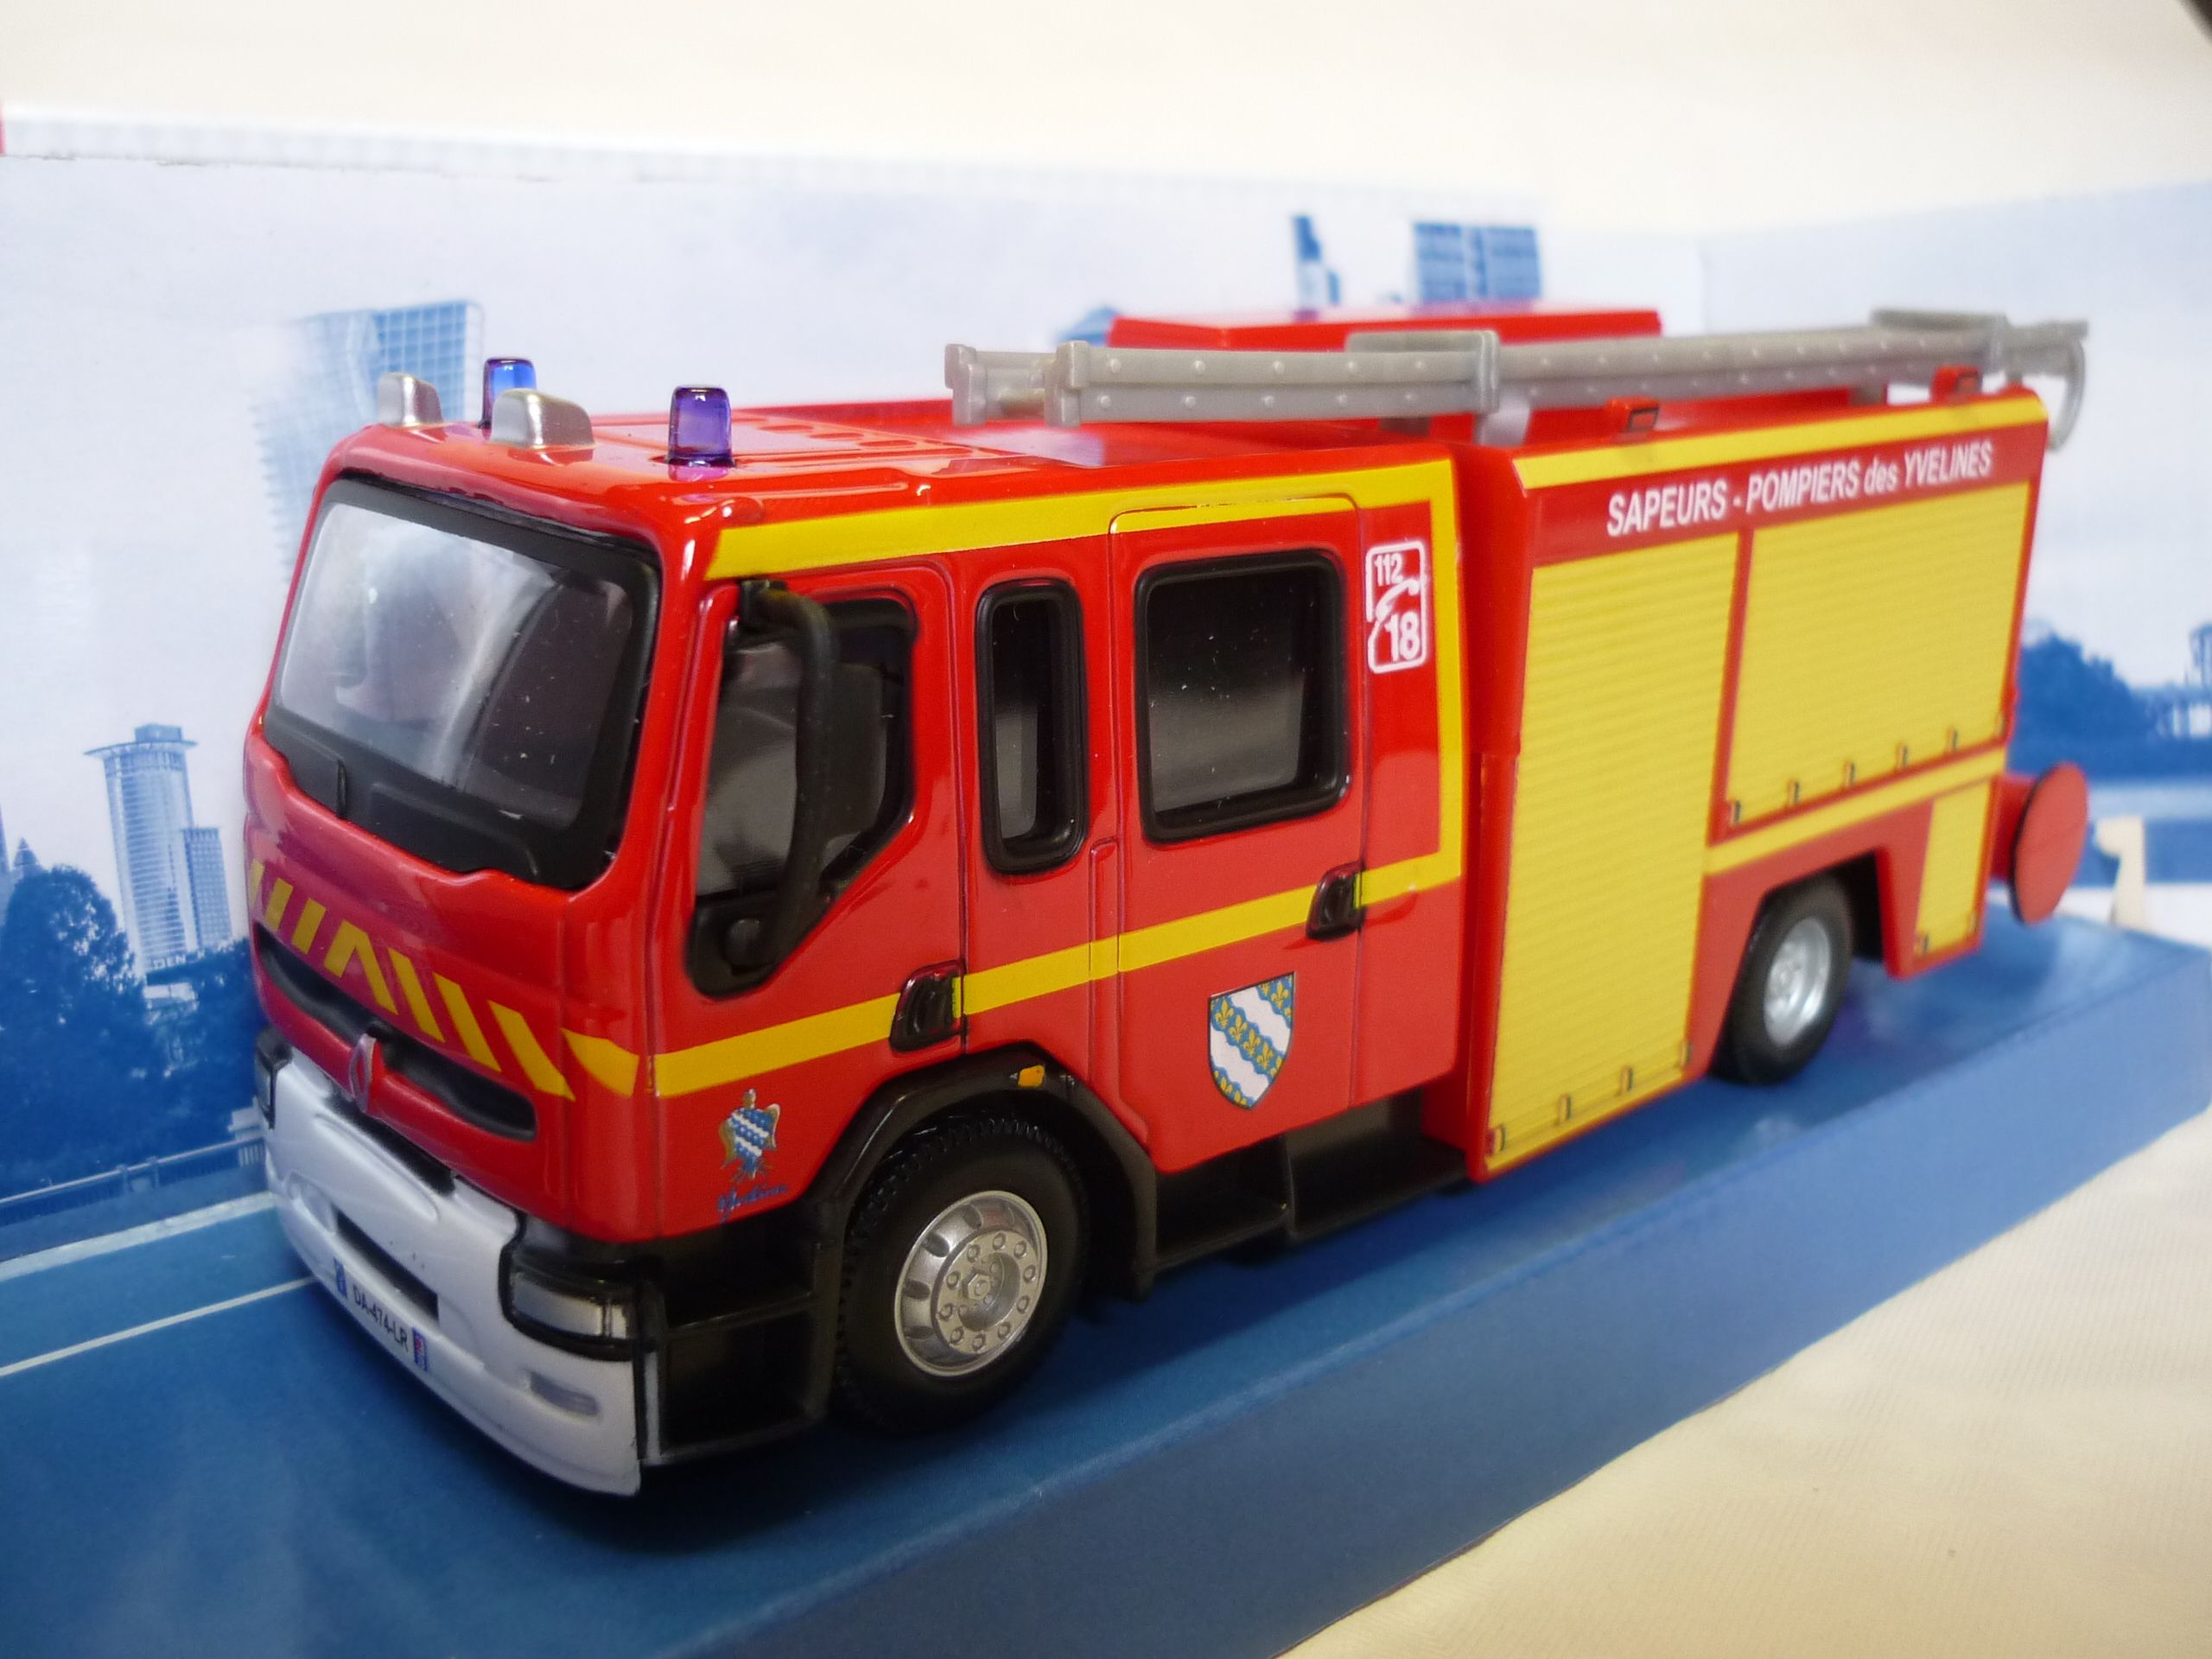 Renault premium pompier FPT miniature by Bburago 1/43